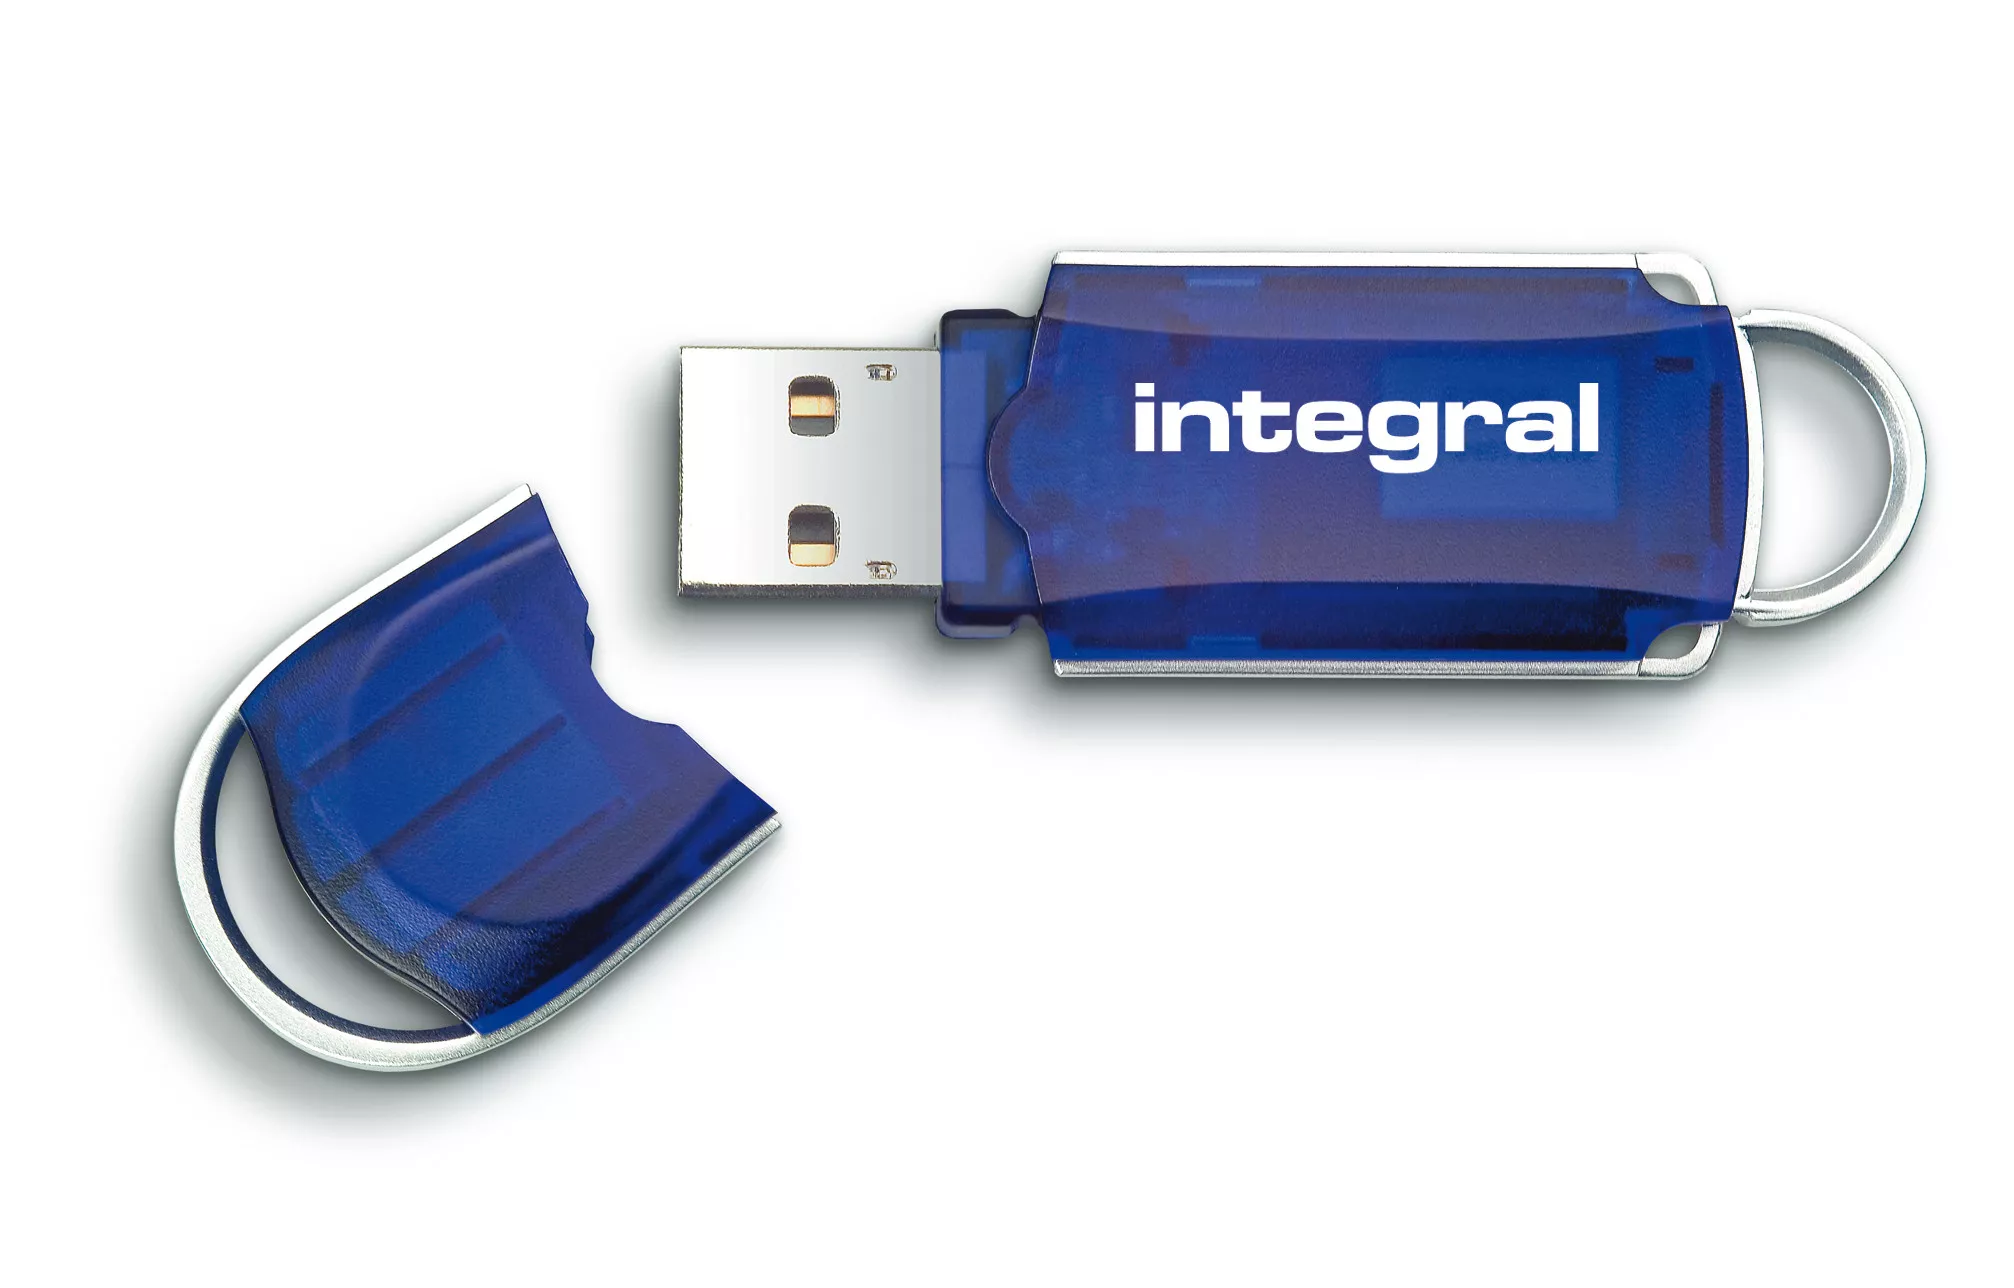 Achat Integral 8GB USB2.0 DRIVE COURIER BLUE INTEGRAL et autres produits de la marque Integral